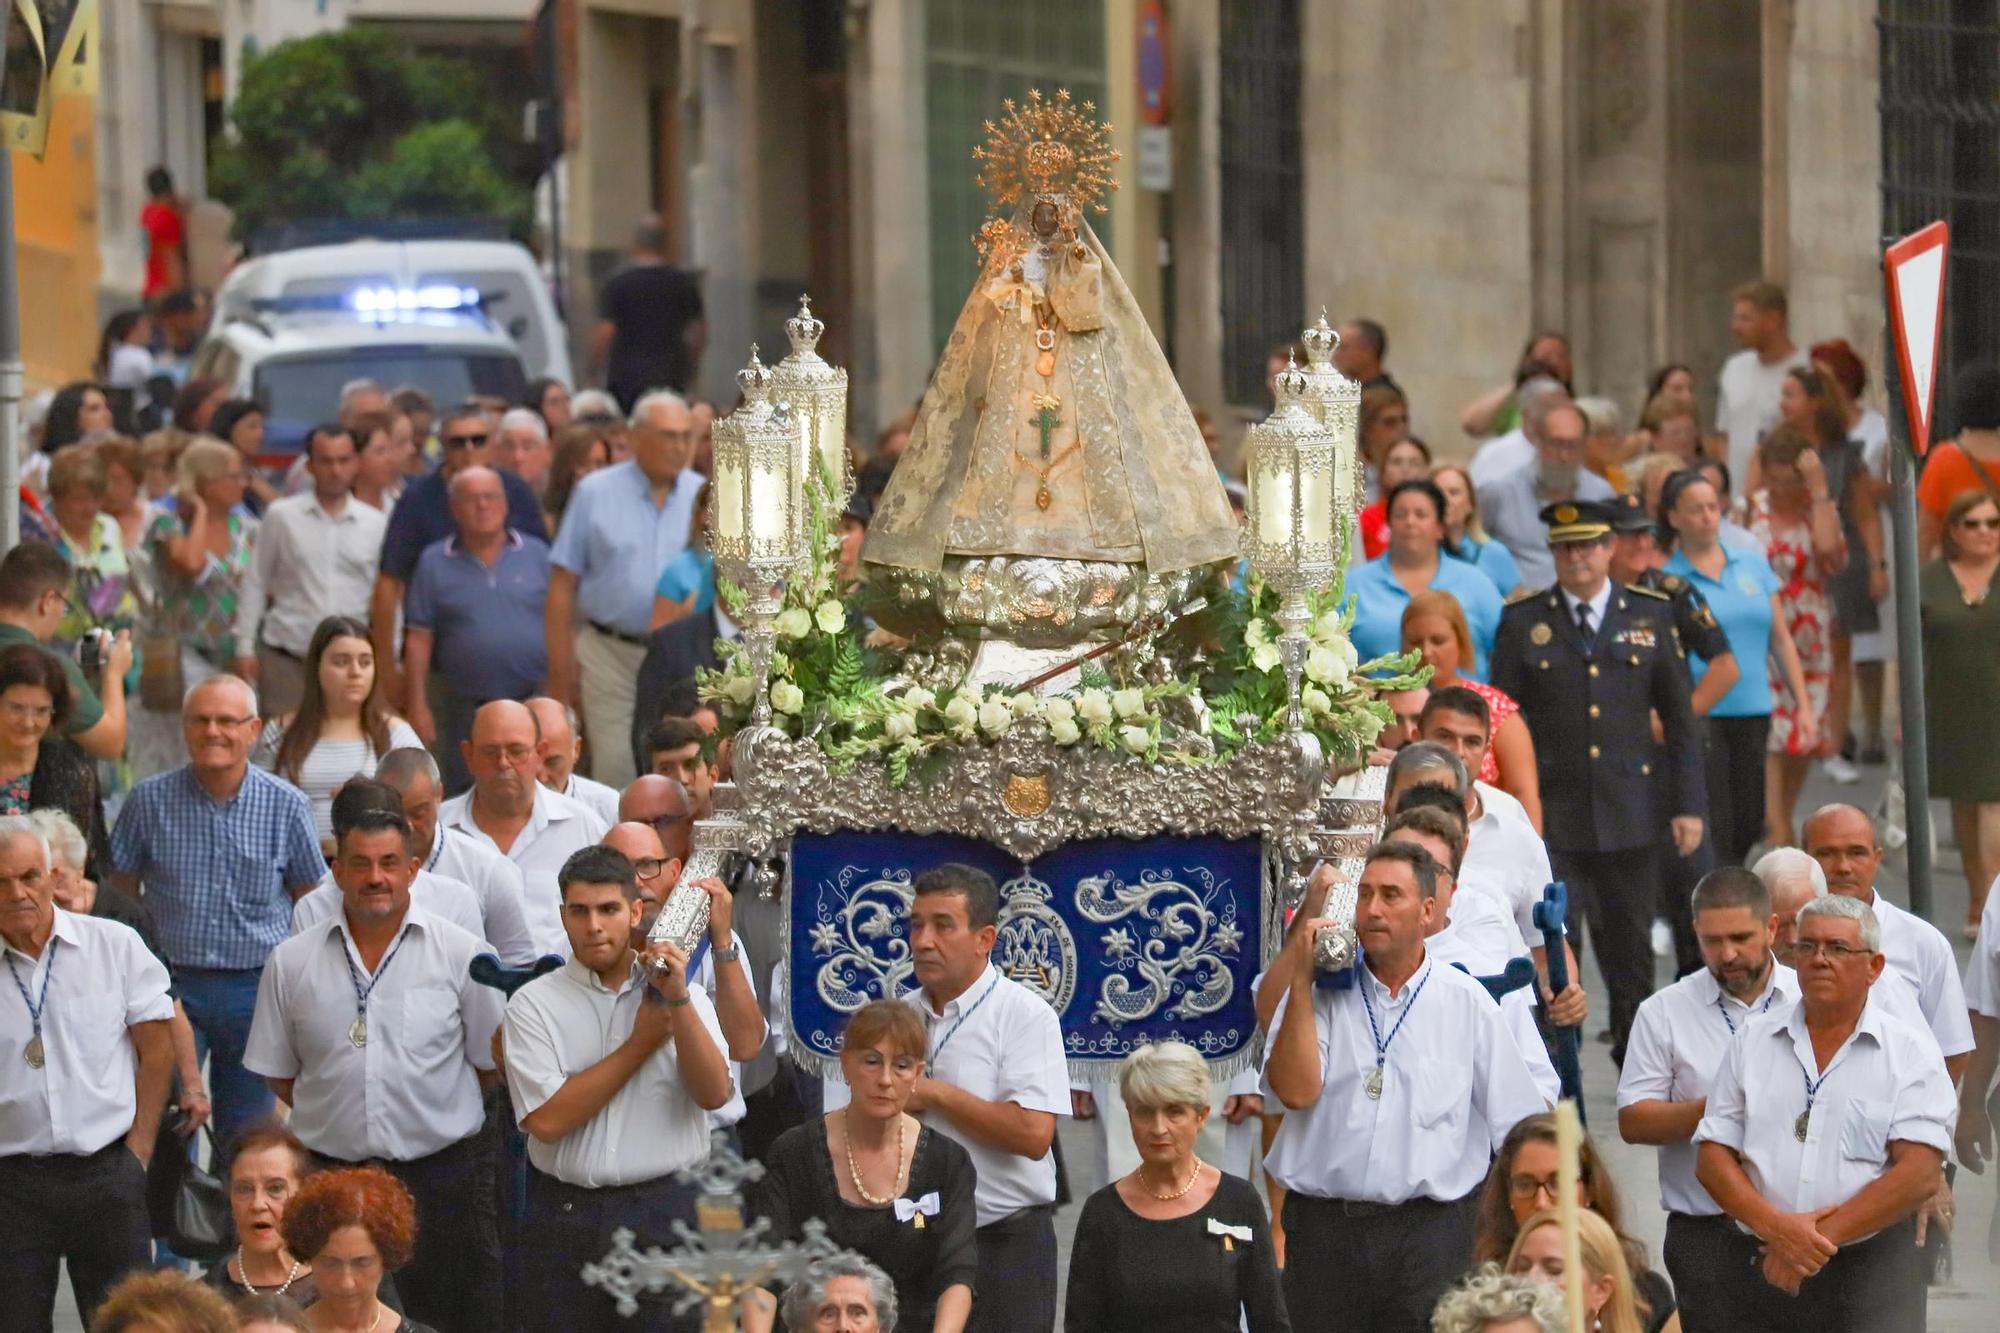 Romería de vuelta a la Virgen de Monserrate, desde la Catedral hasta su santuario en Orihuela.